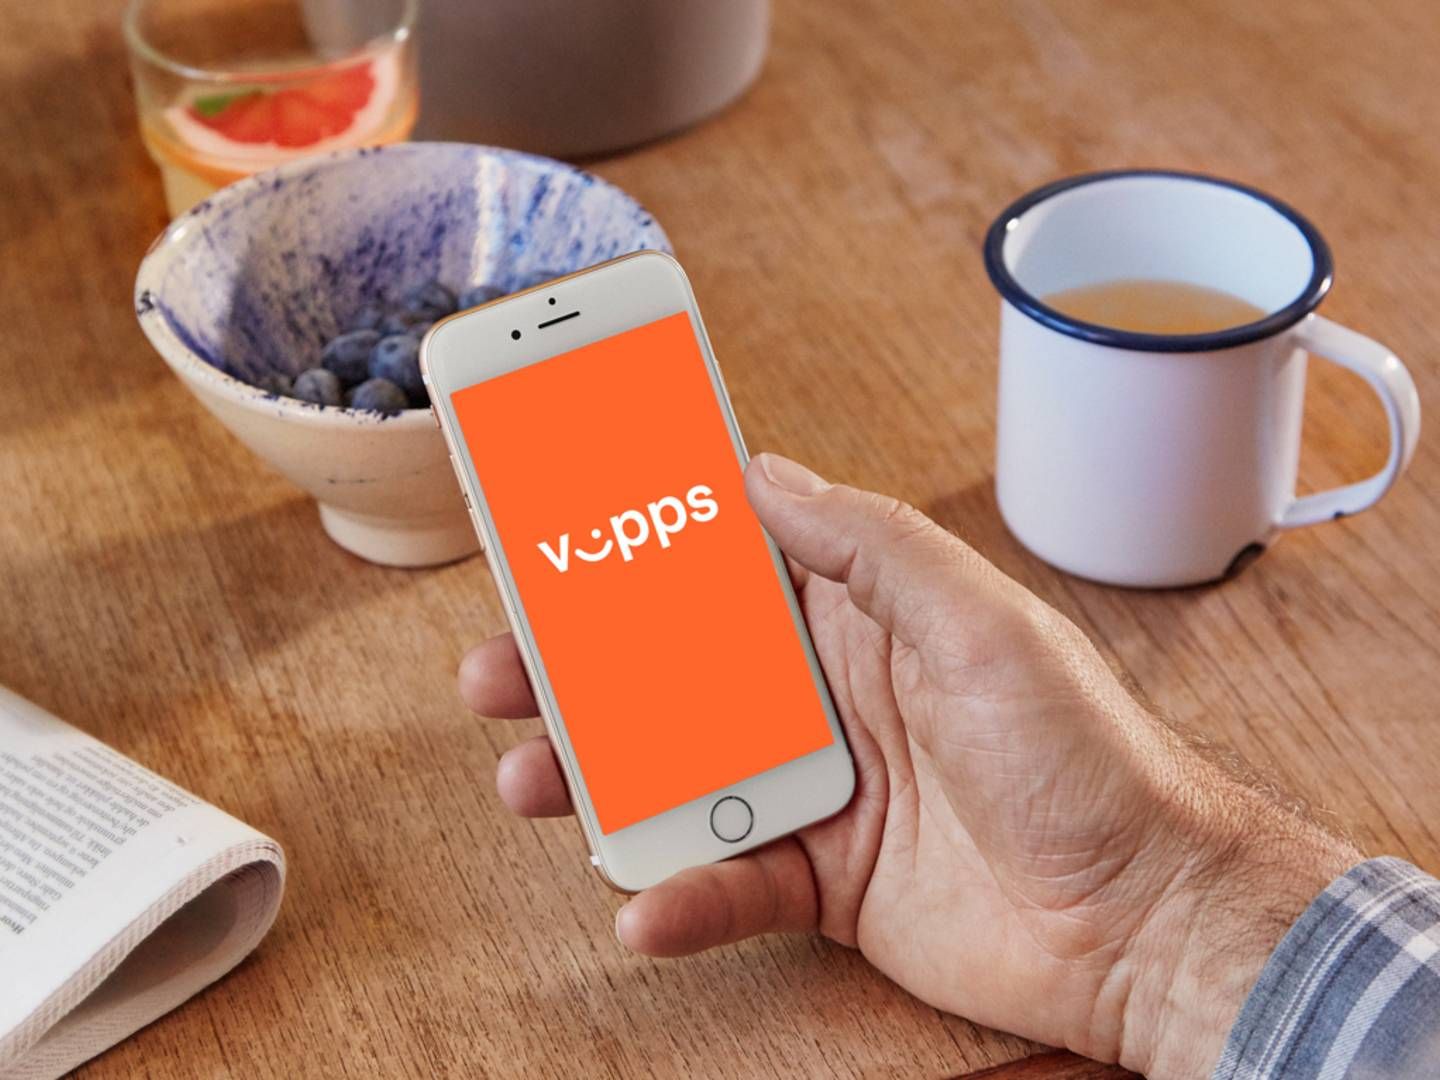 Mange kunder har problemer med å få brukt Vipps fredag ettermiddag. | Foto: PR/Vipps